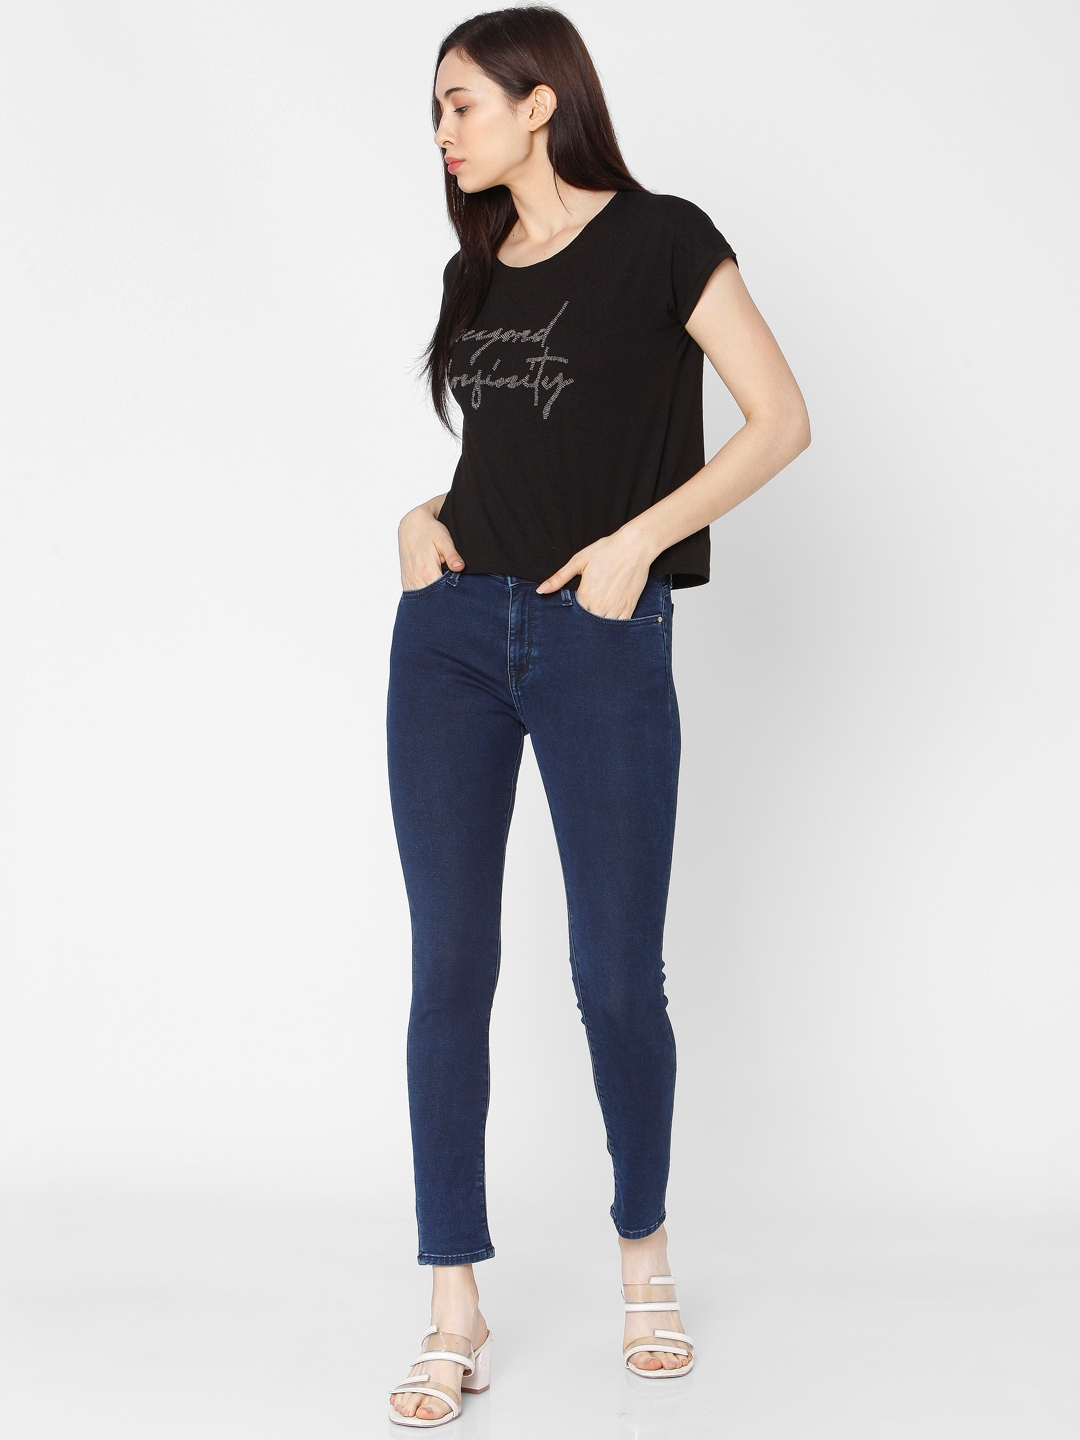 spykar | Women's Blue Cotton Solid Skinny Jeans 0